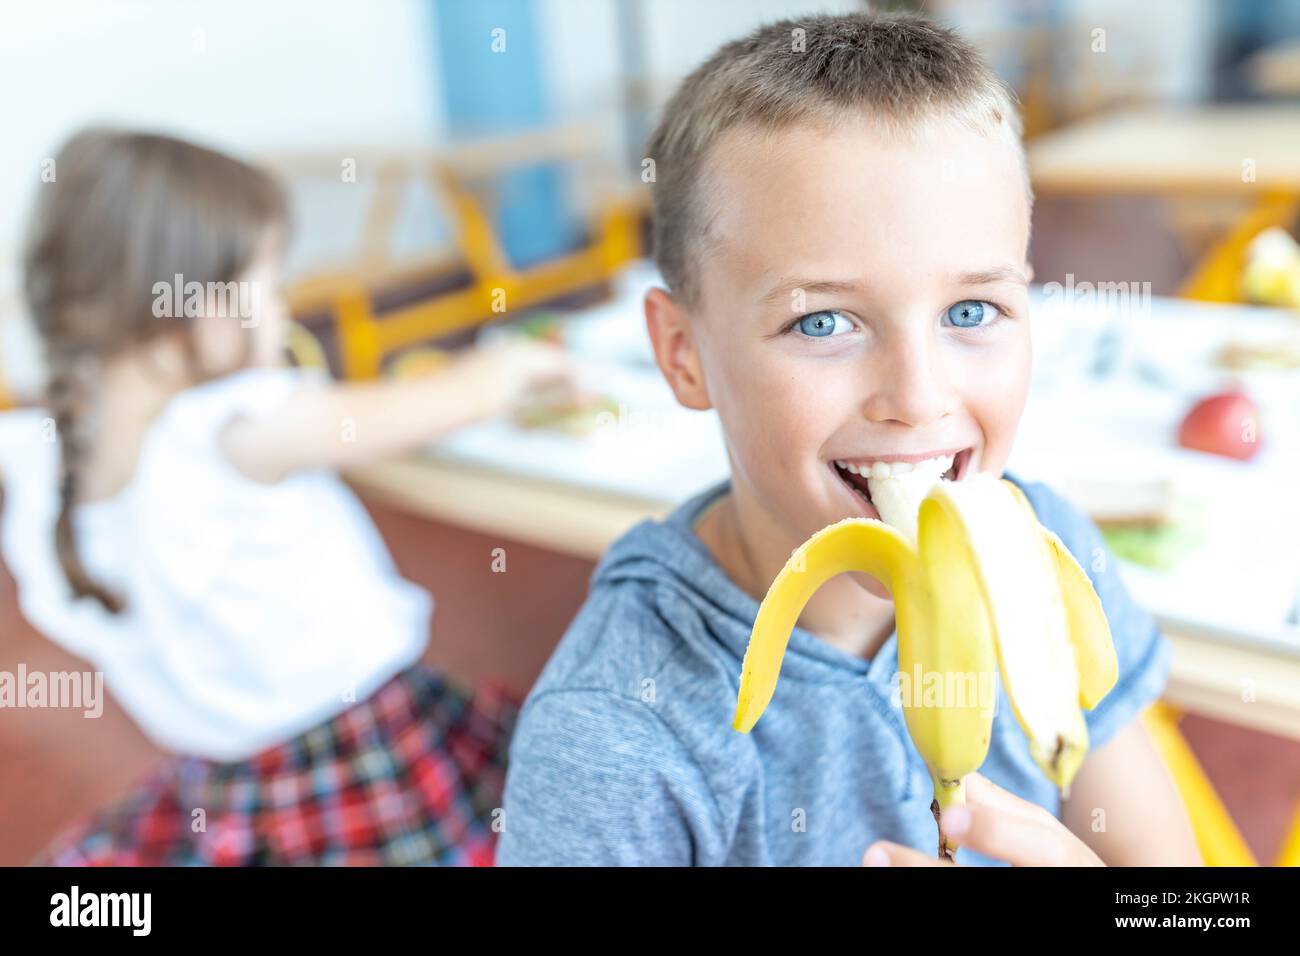 Ragazzo felice con occhi blu che mangia banana durante la pausa pranzo in caffetteria Foto Stock